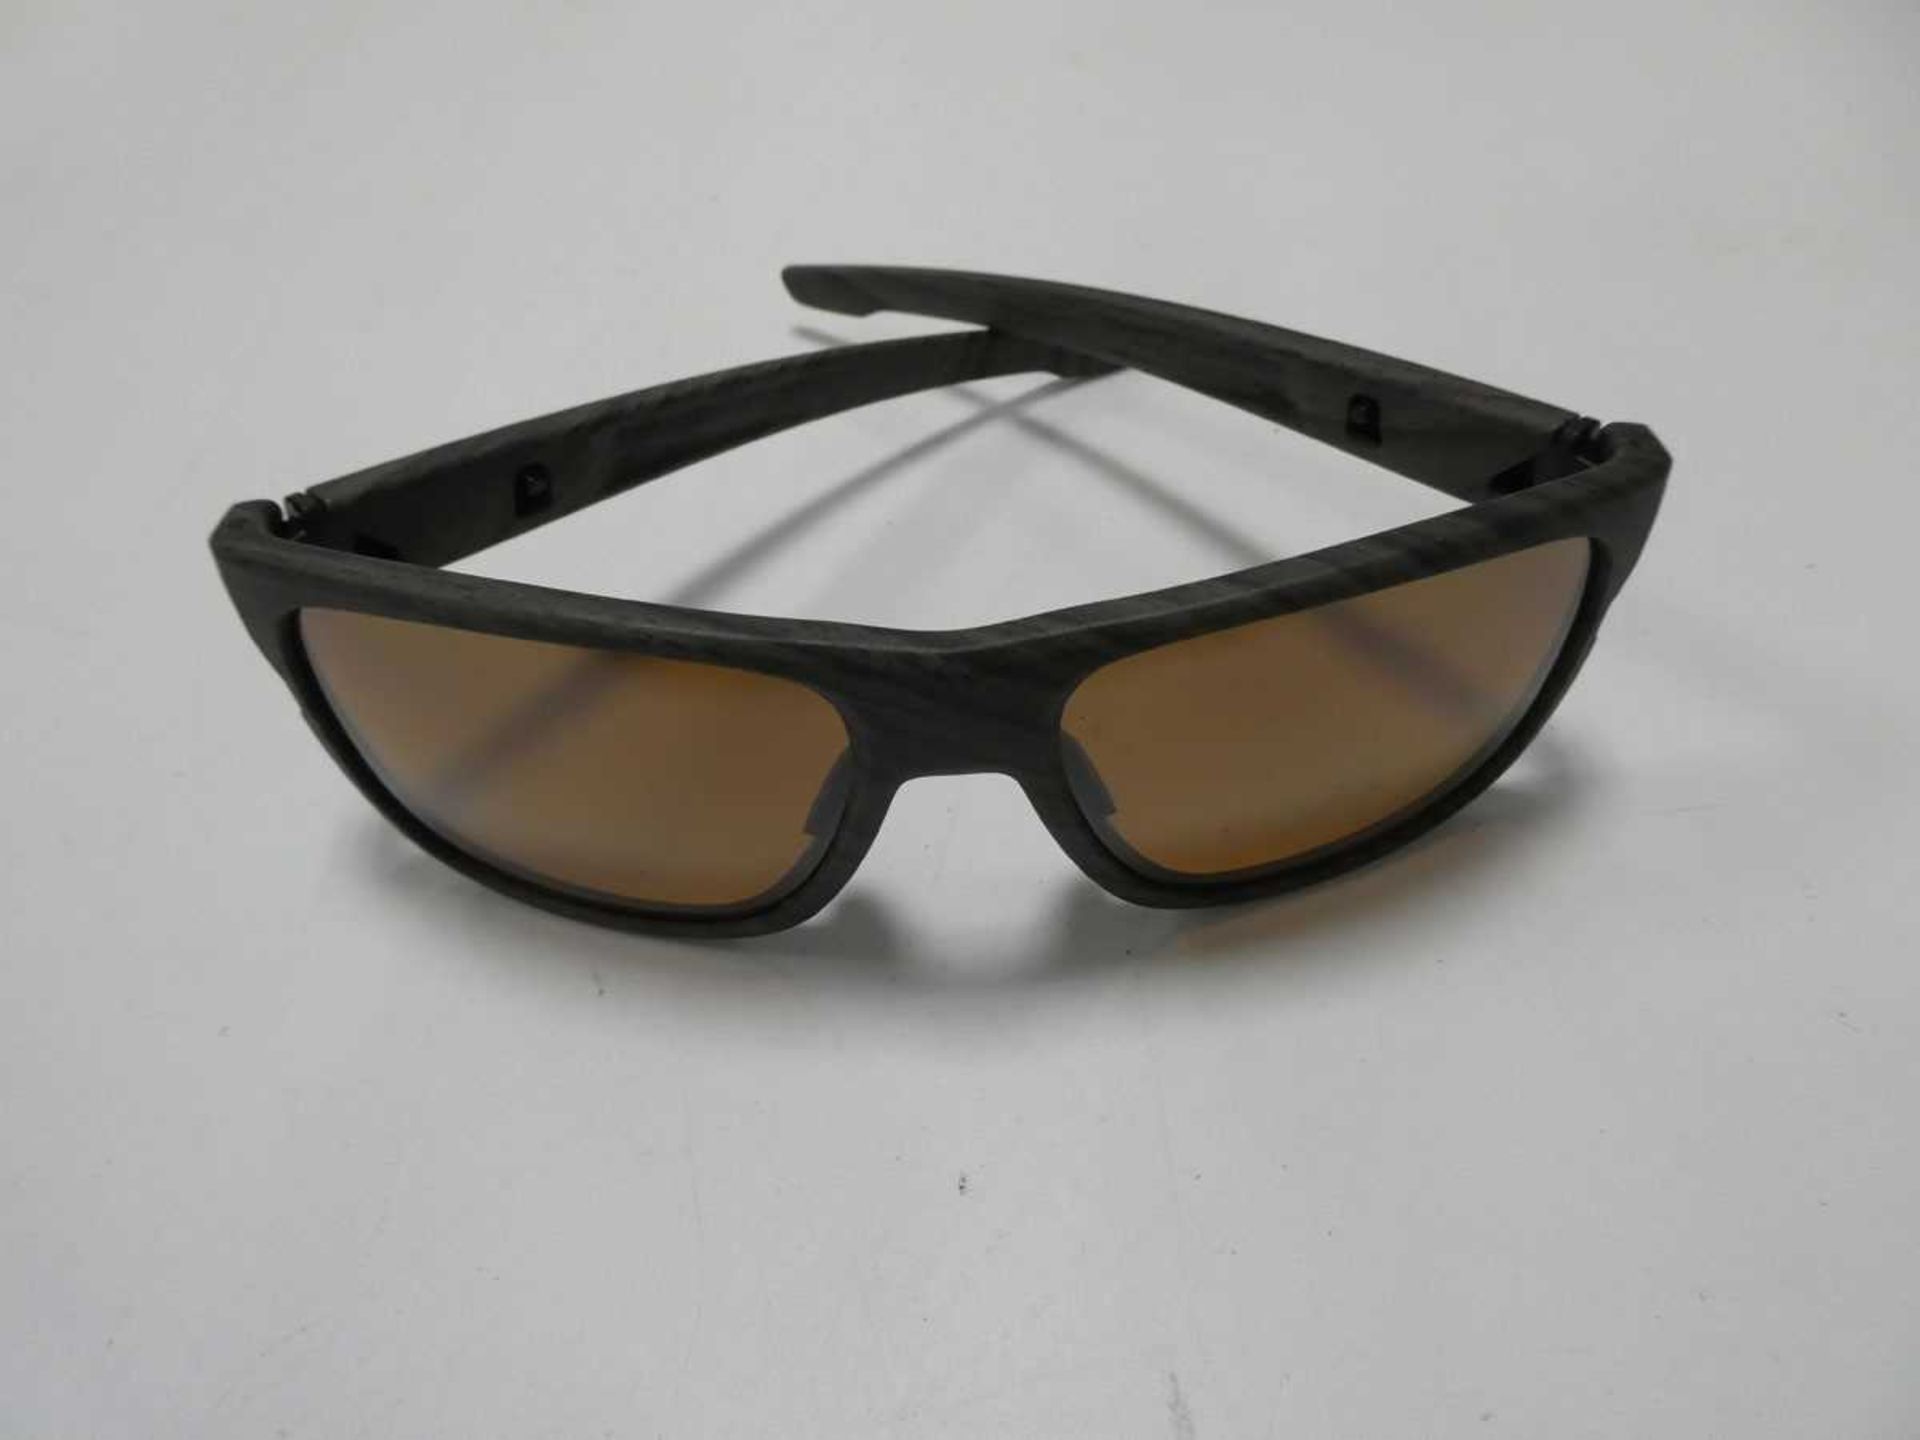 Pair of Crossrange sunglasses with slip case